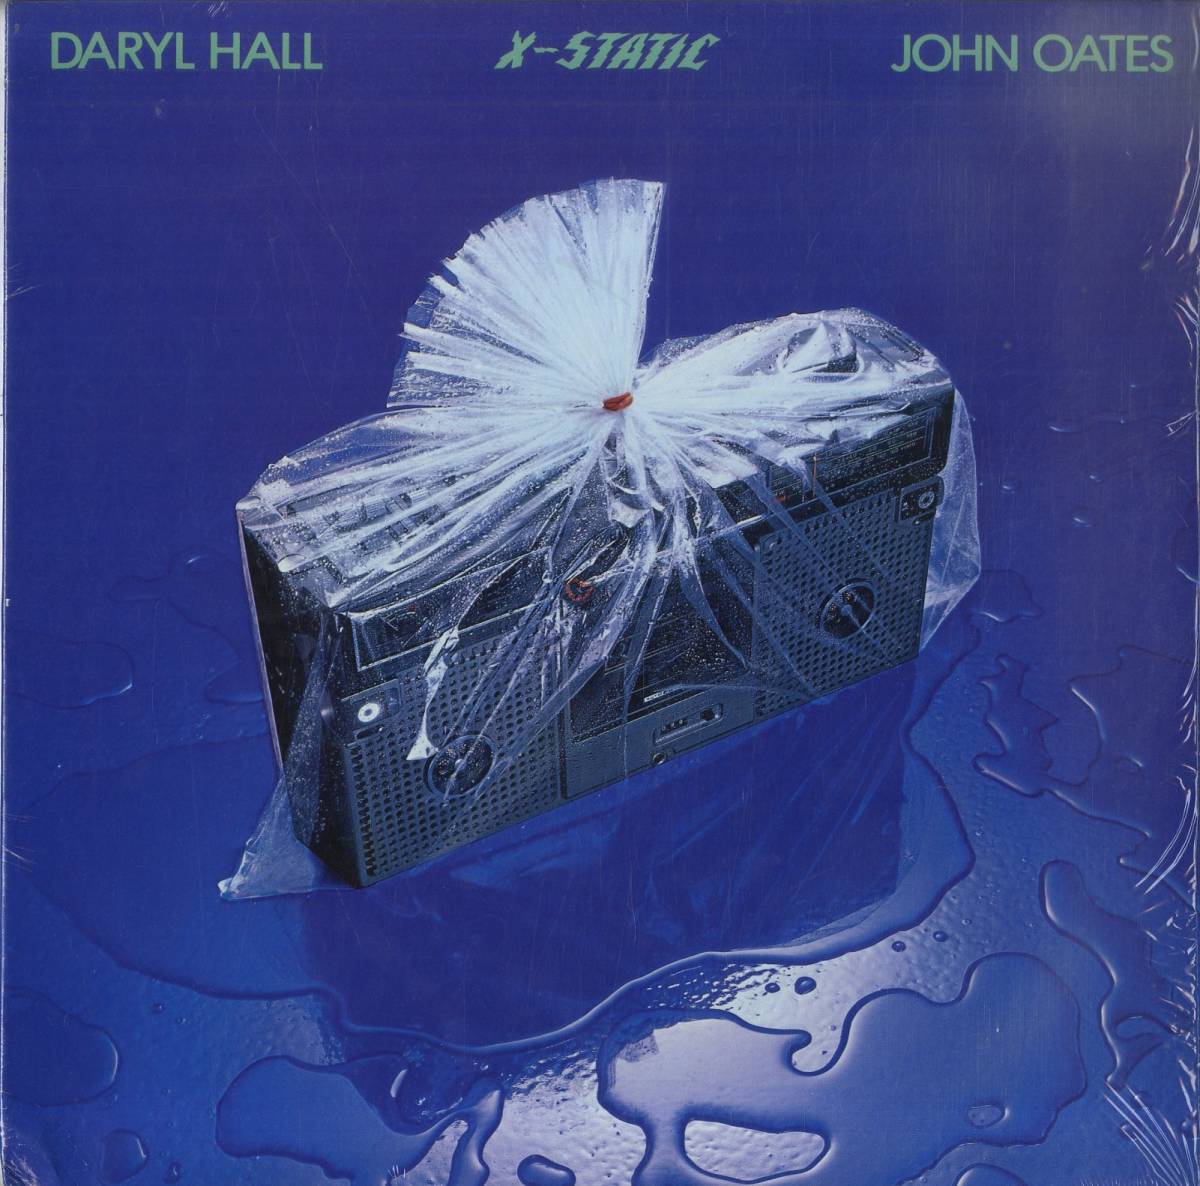 A00466571/LP/ダリル・ホールとジョン・オーツ「X-Static (1979年・AFL1-3494・ディスコ・DISCO)」_画像1